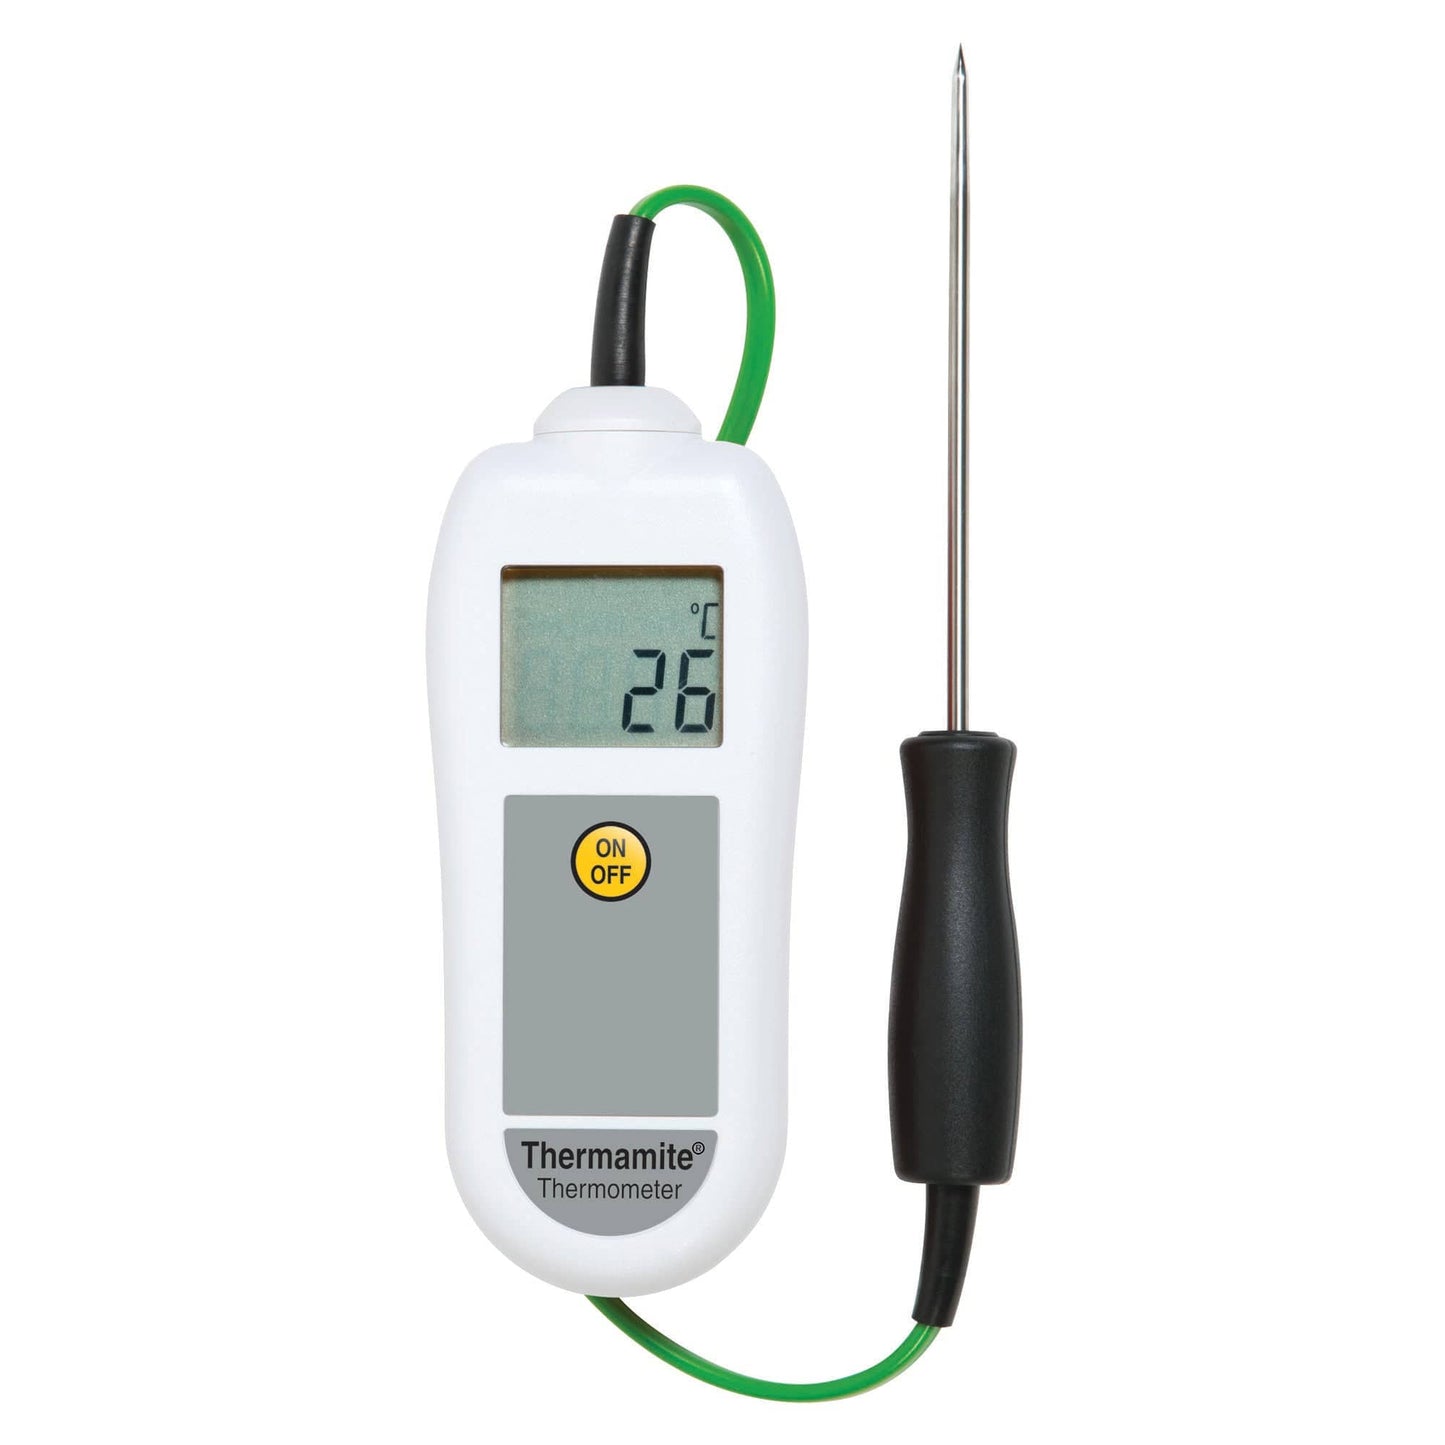 Un Thermomètre numérique blanc Thermamite avec sonde alimentaire de Thermometre.fr sur fond blanc.